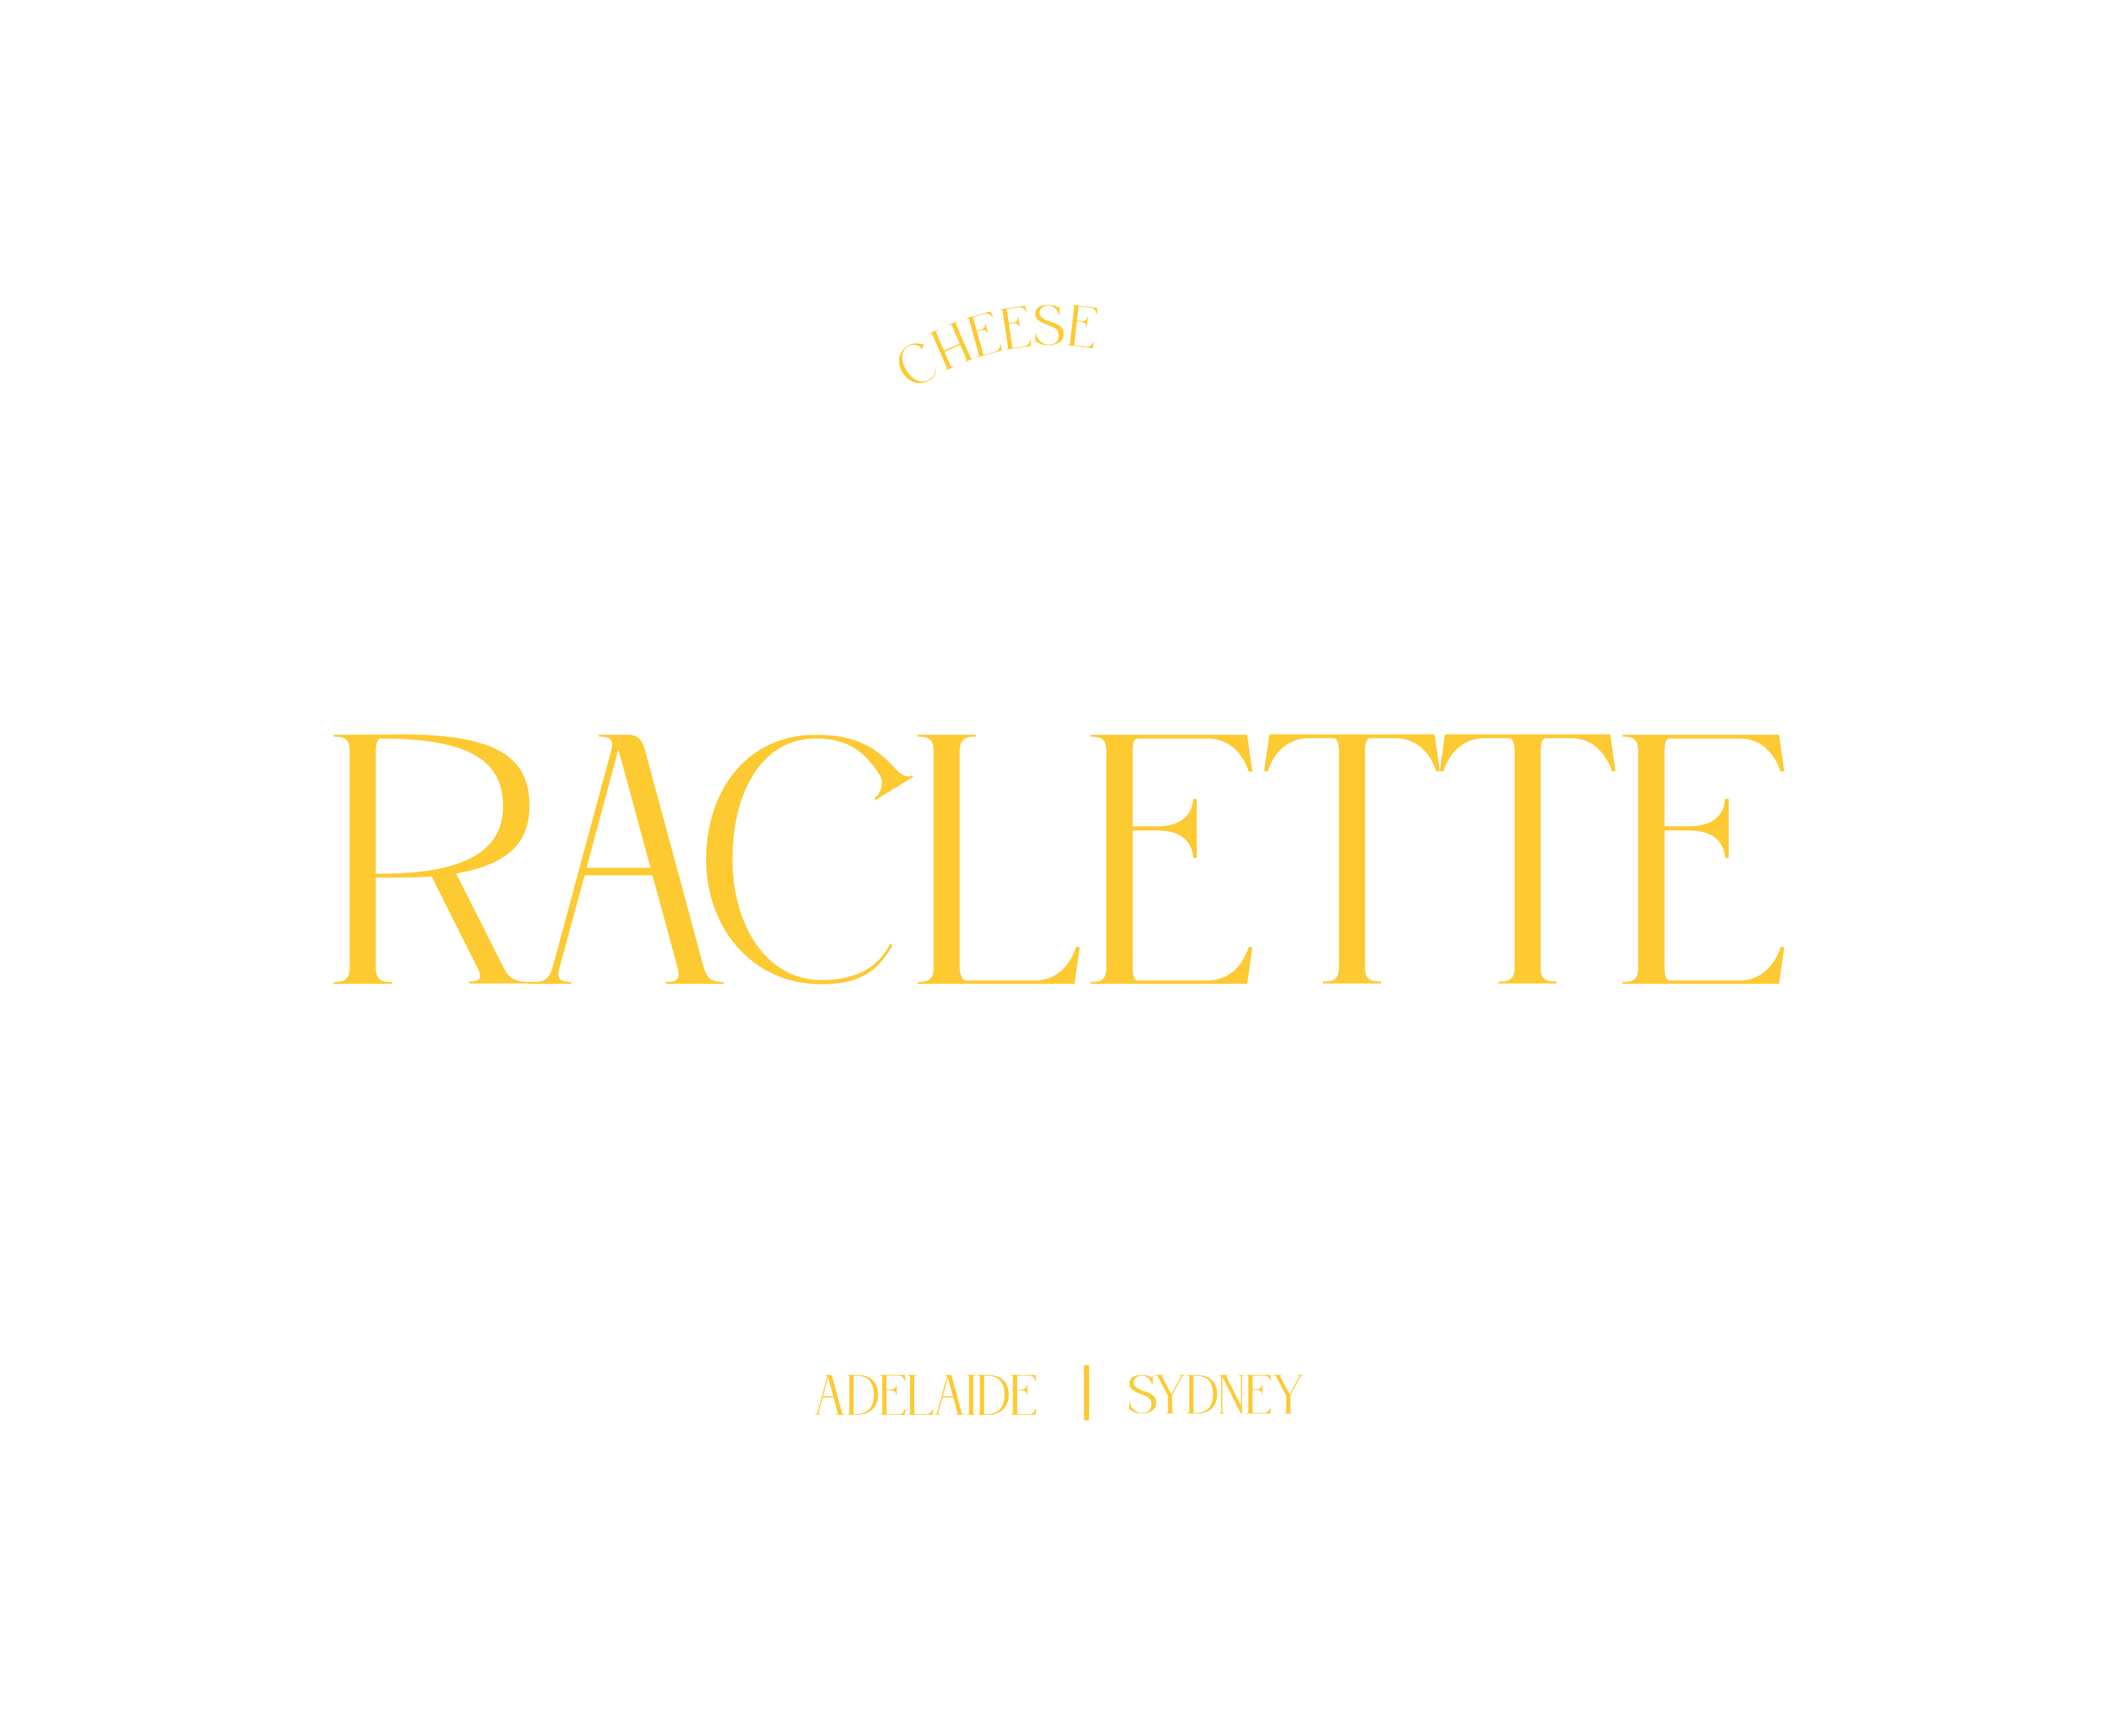 Raclette Igloo Experience – Australia